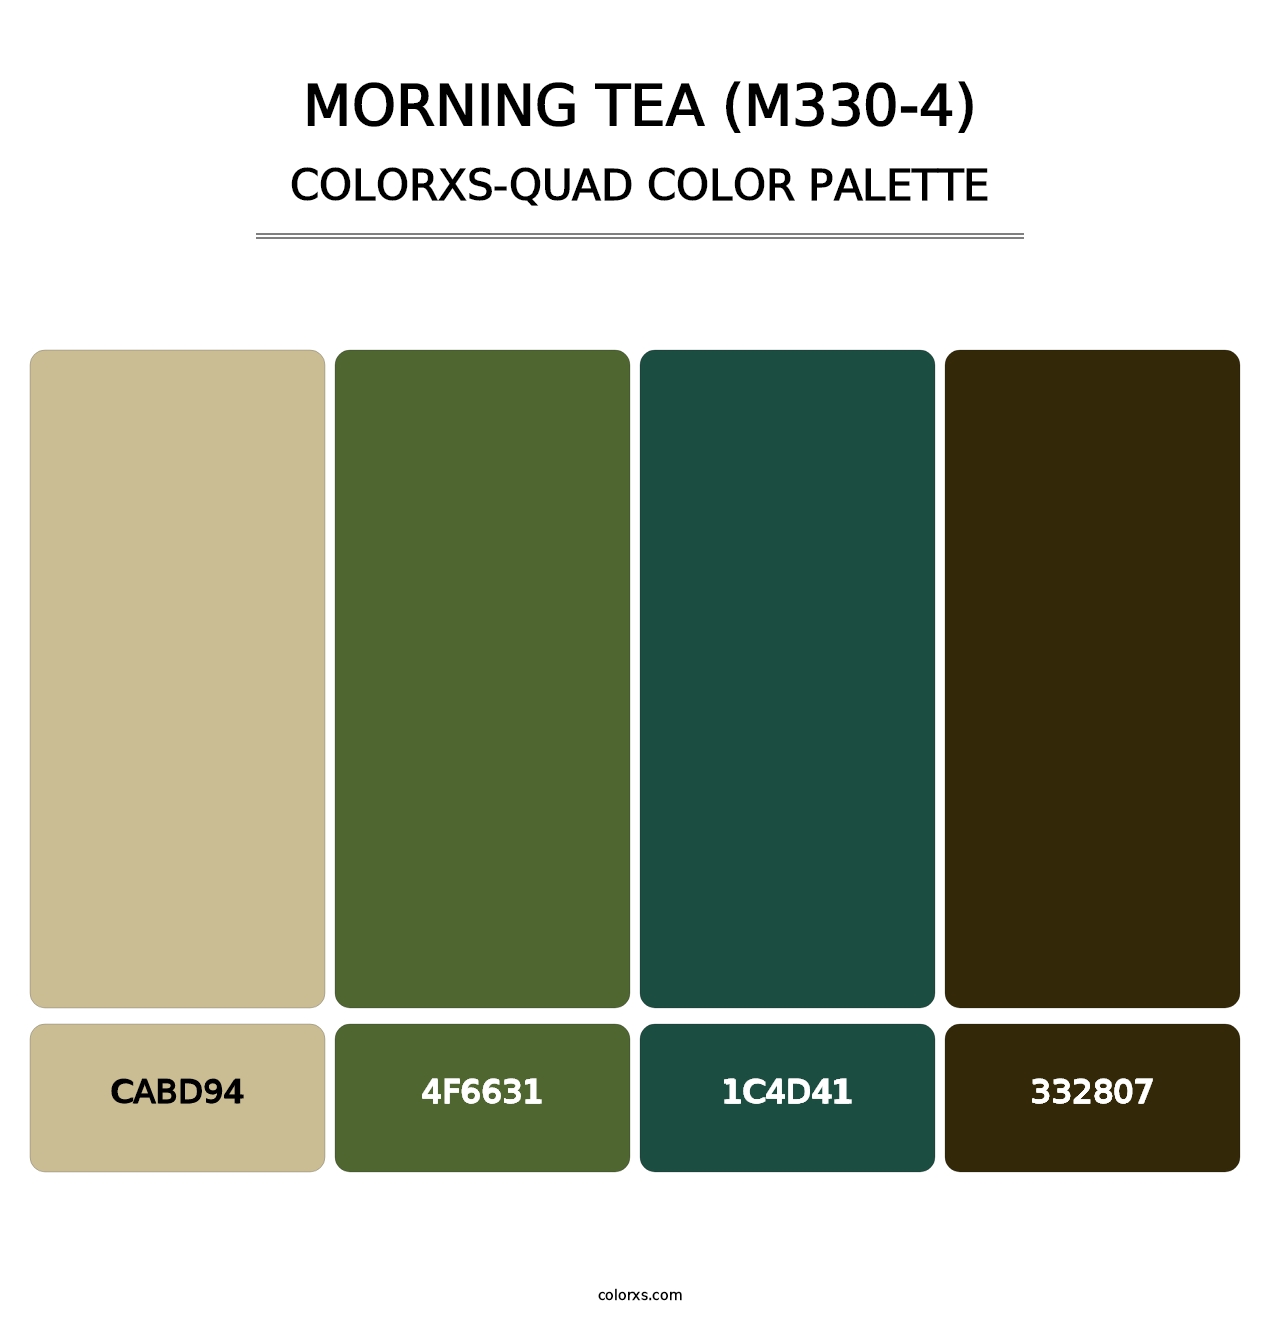 Morning Tea (M330-4) - Colorxs Quad Palette